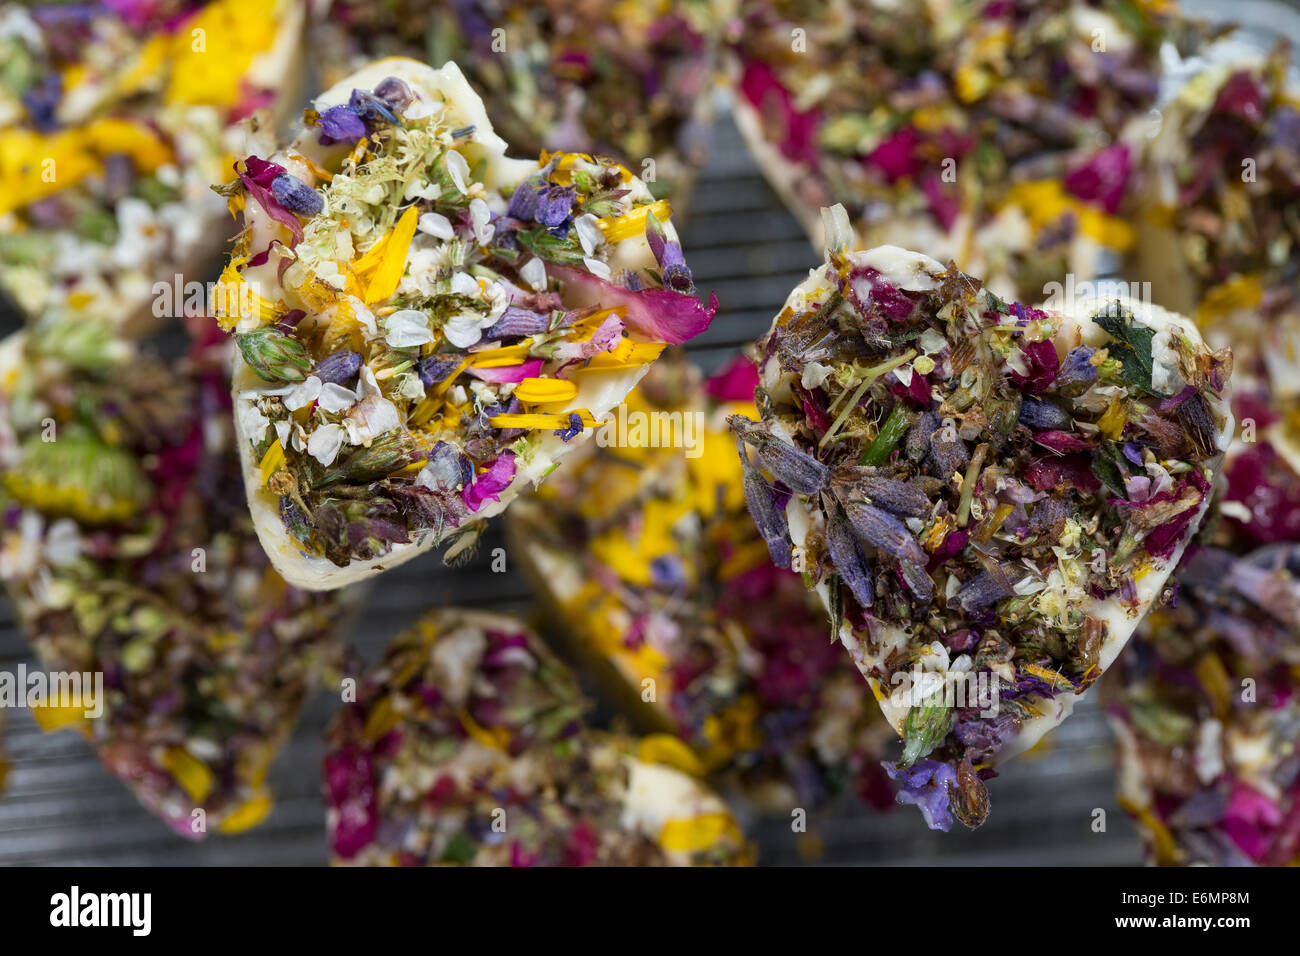 Herb butter with edible blossoms, flowers, Kräuterbutter mit essbaren Blüten, Butter, Food, Kräuterküche, Blütenblätter-Butter Stock Photo